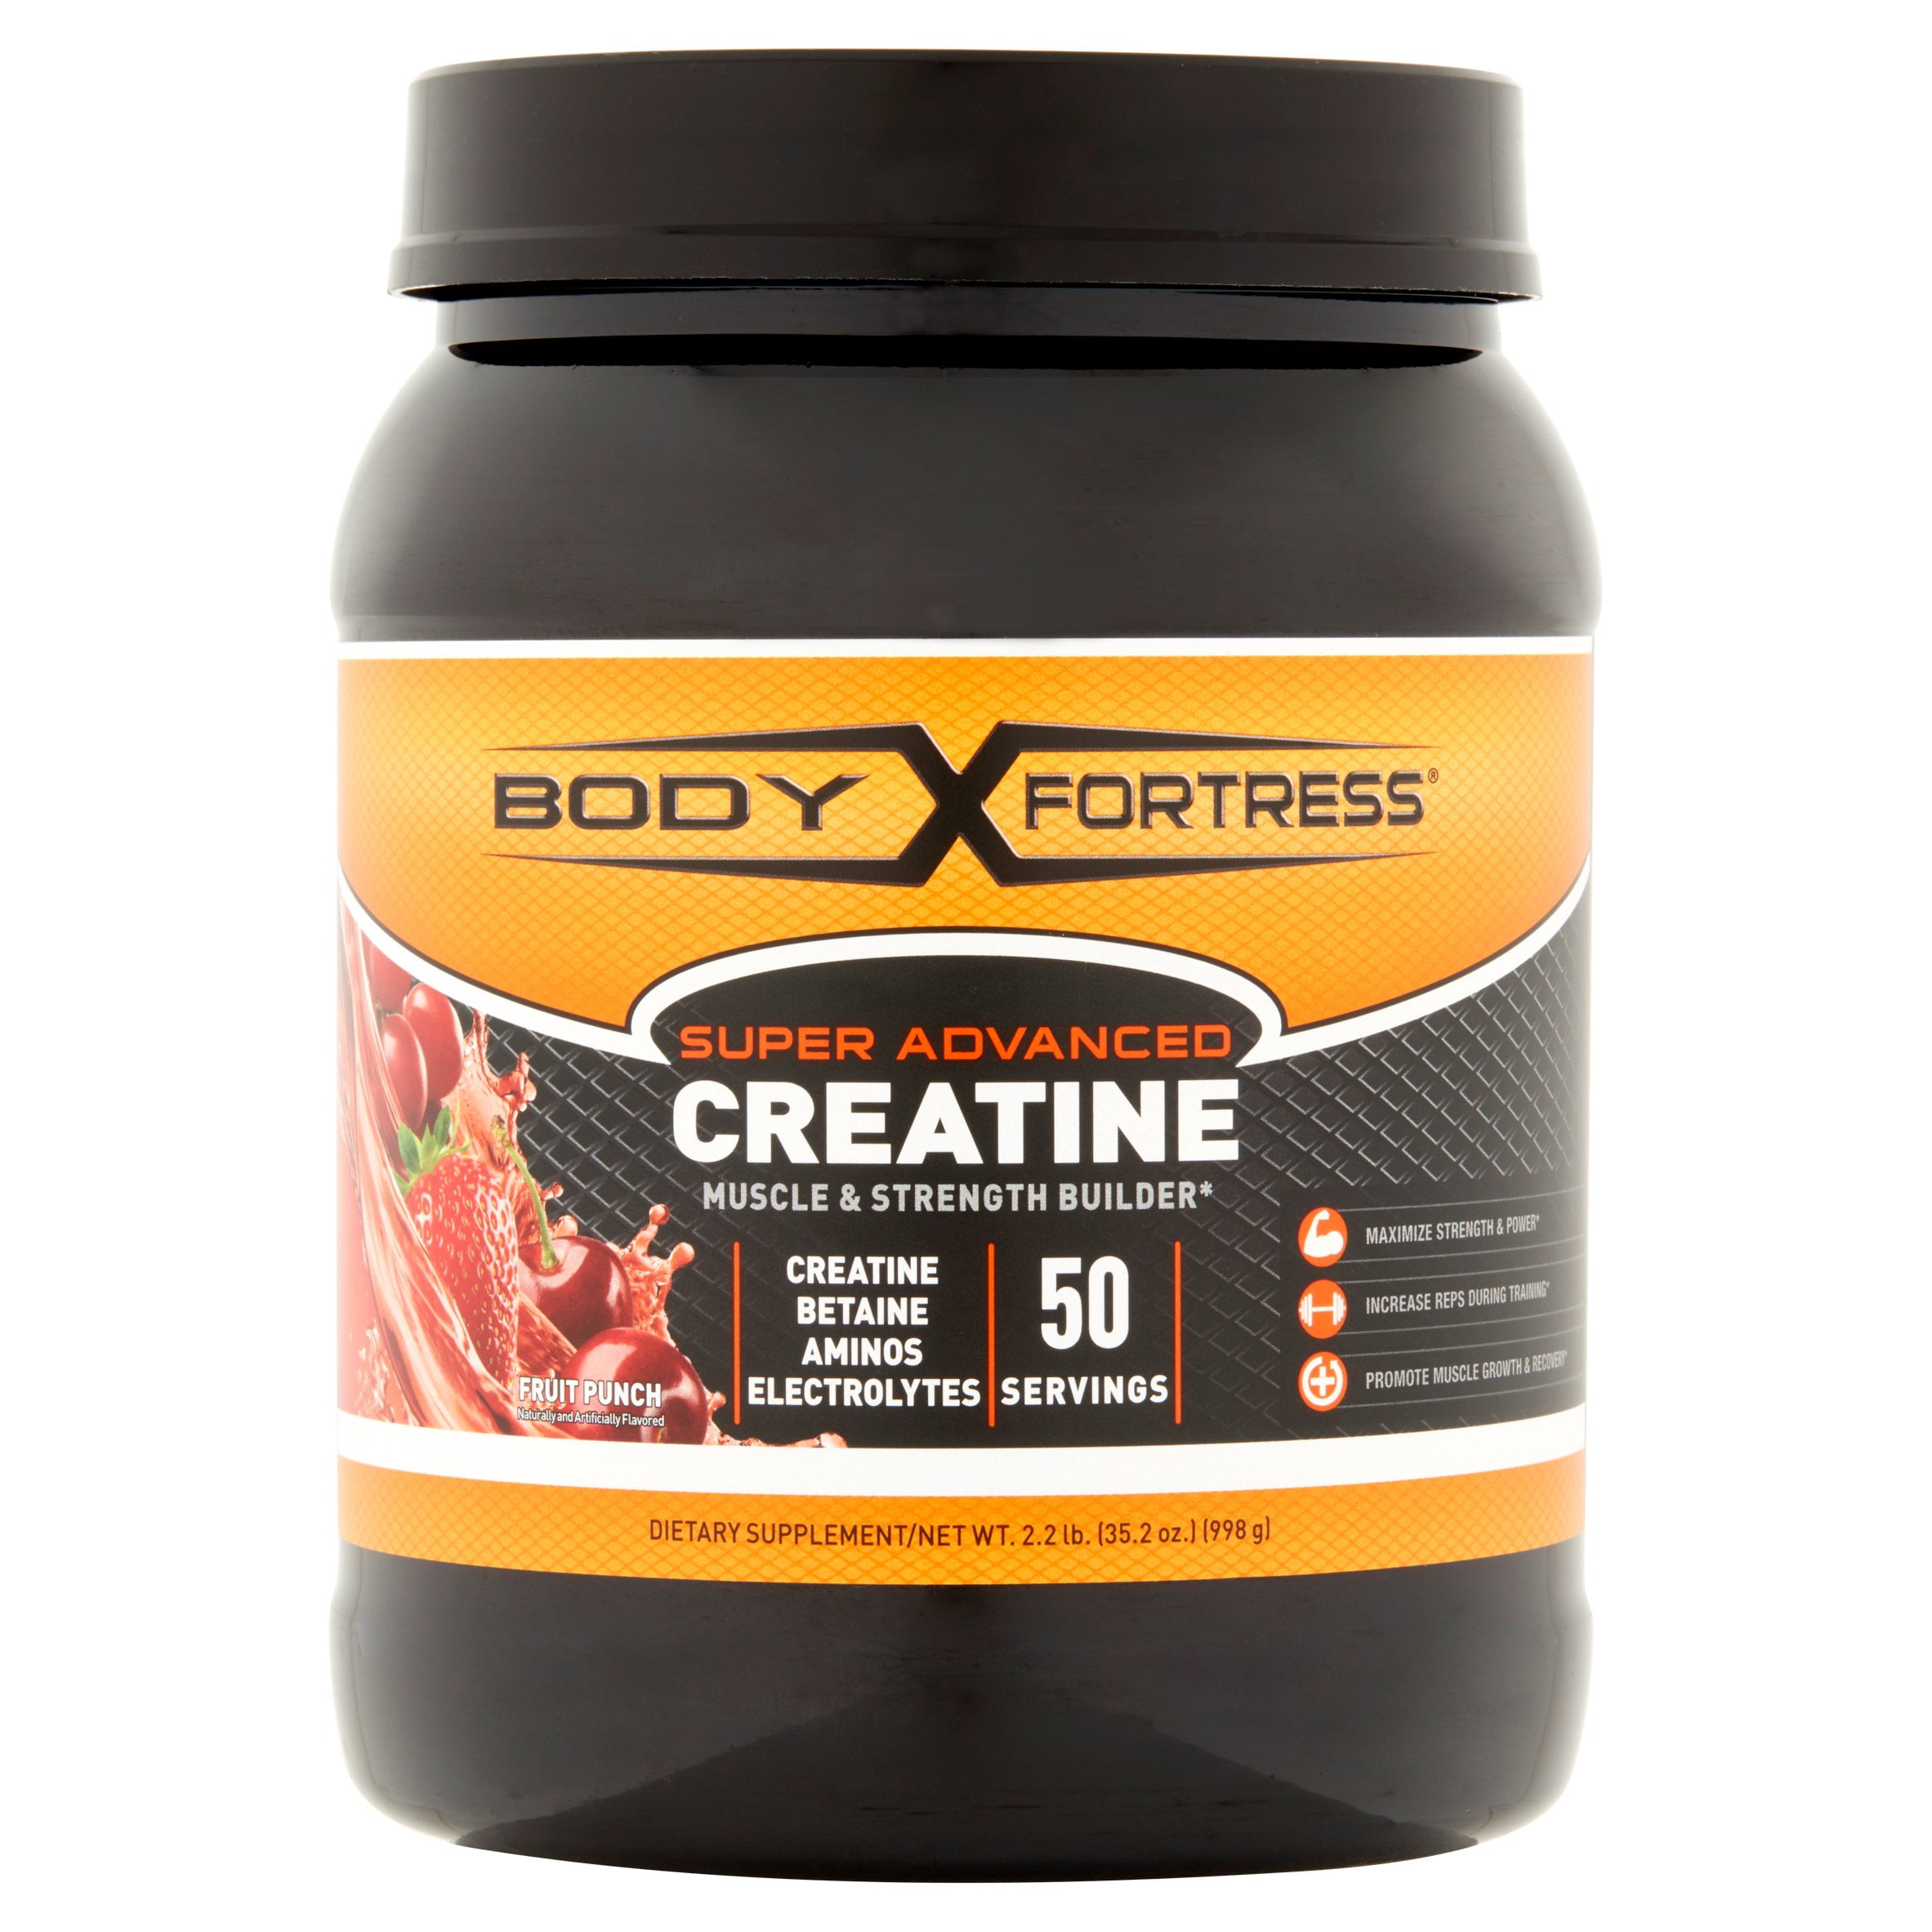 Does creatine expire?